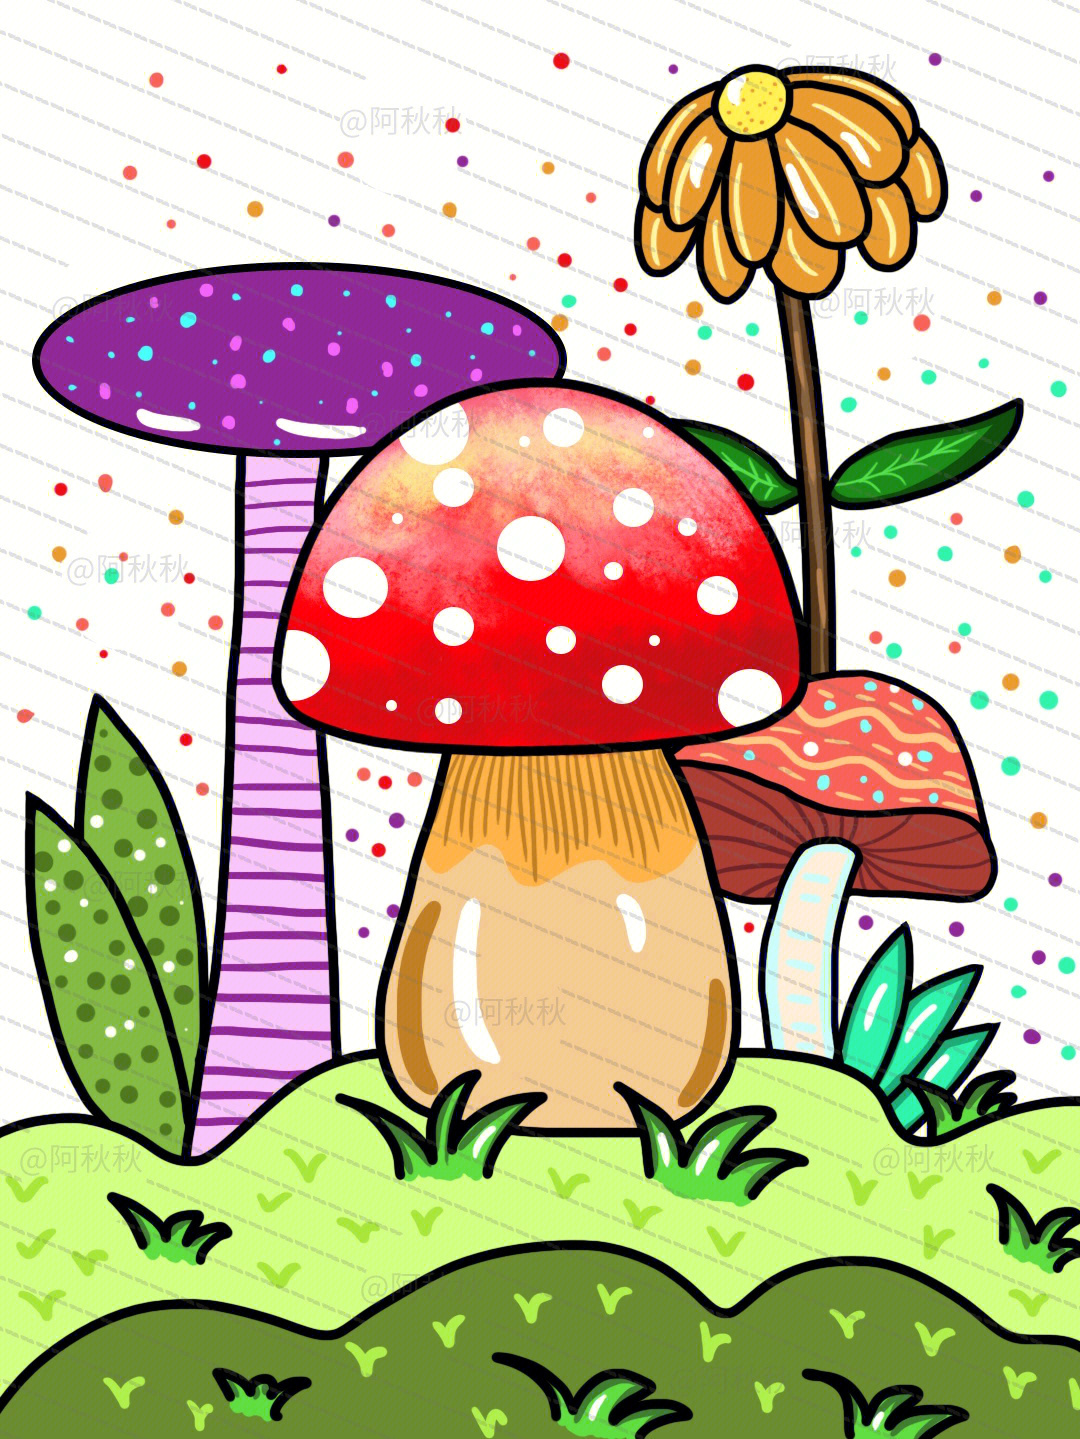 蘑菇儿童画创意美术68岁儿童画作品